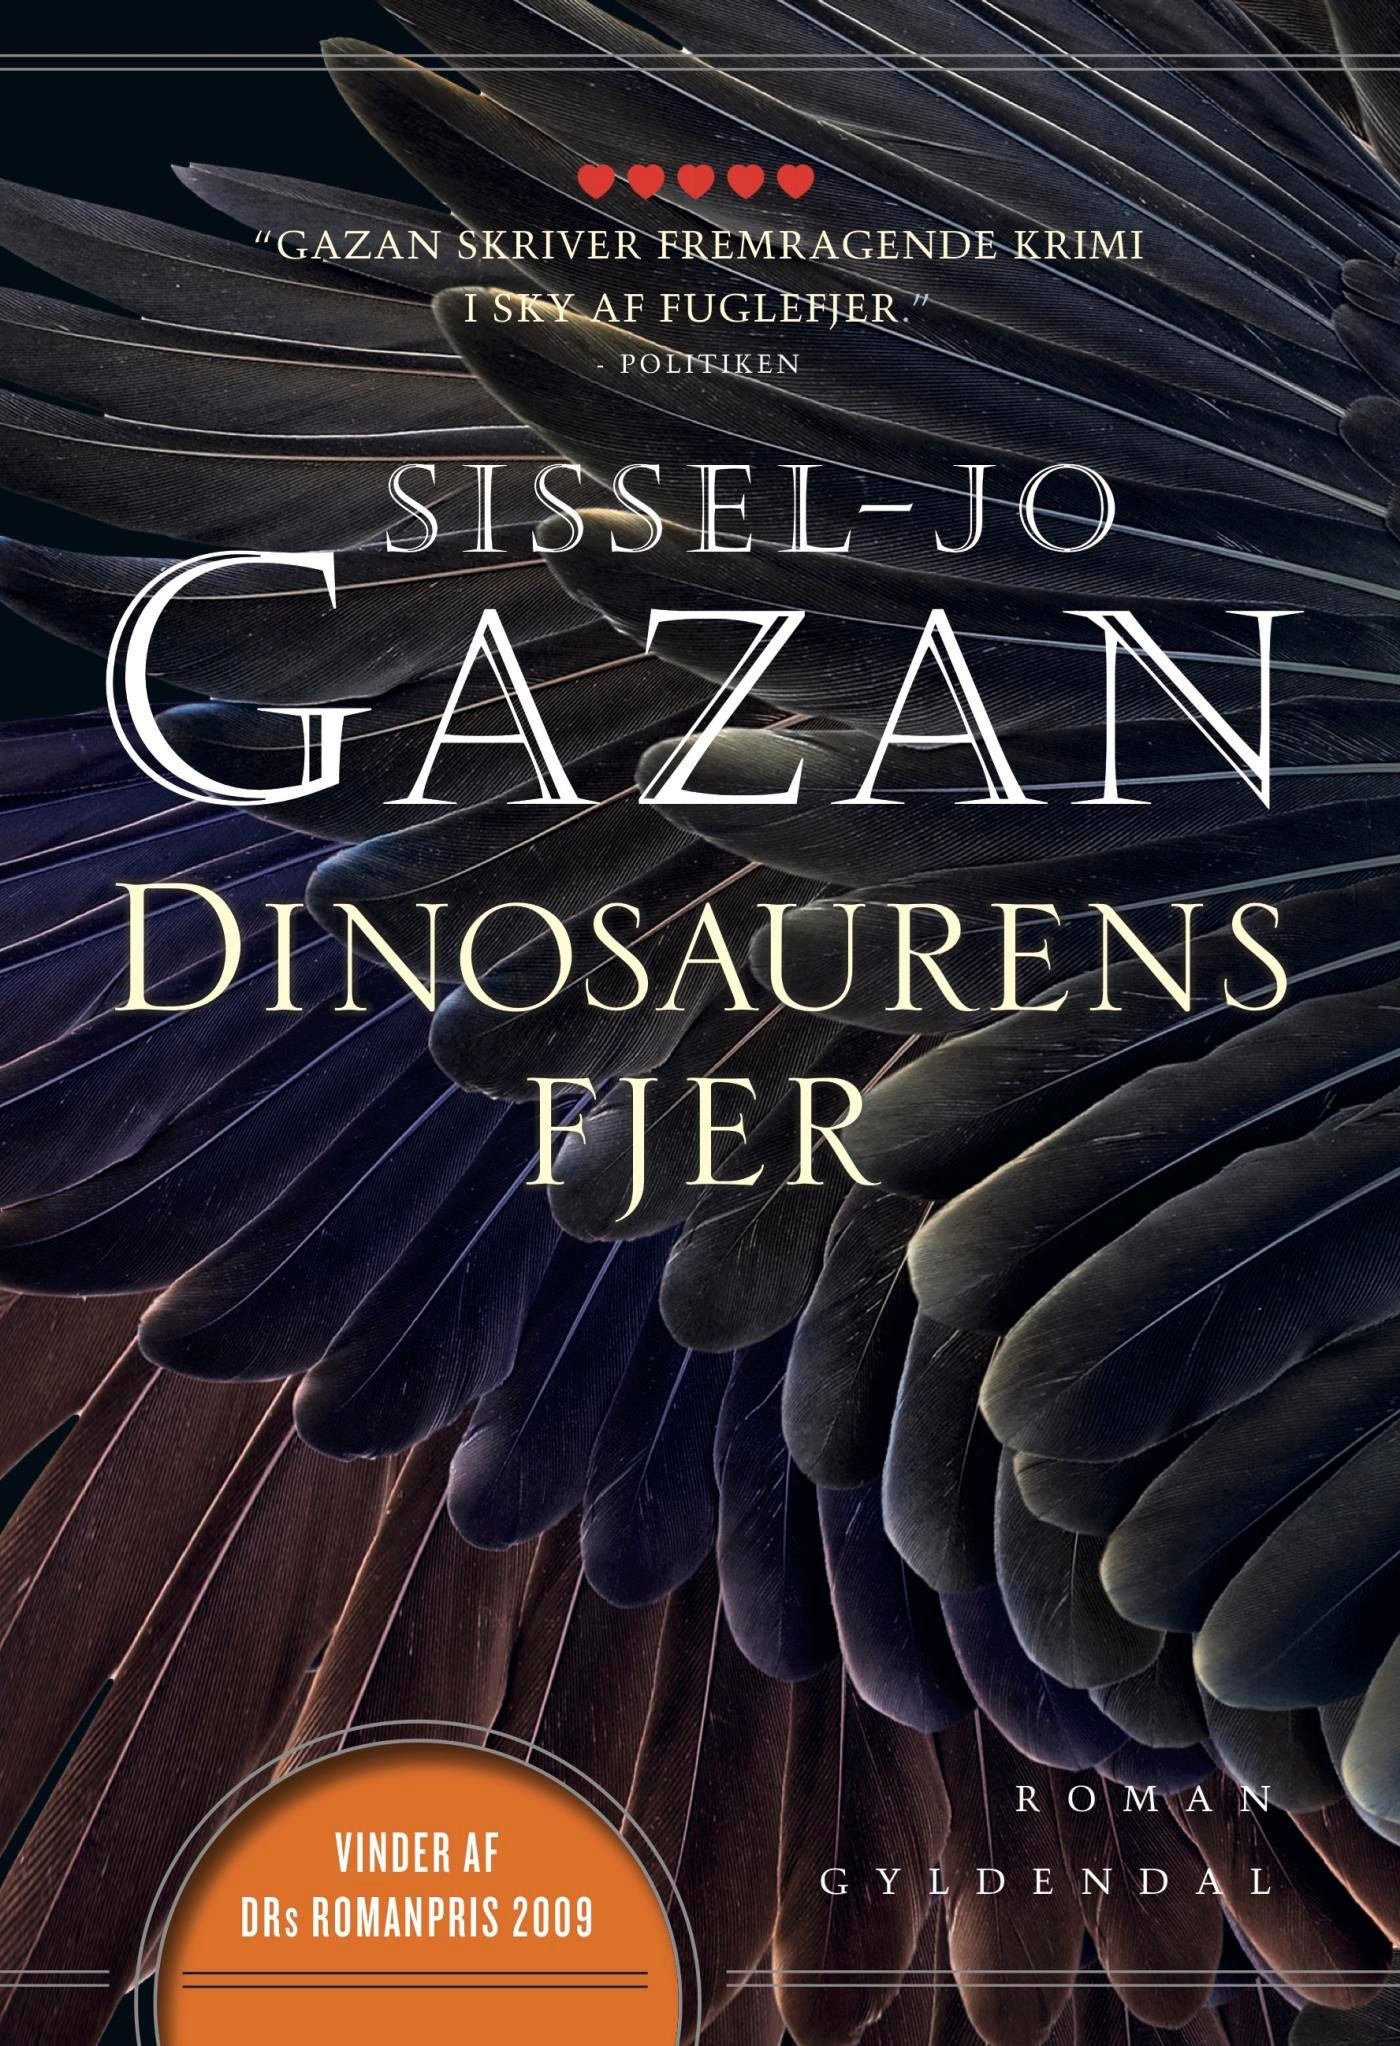 Dinosaurens fjer, eBook by Sissel-Jo Gazan